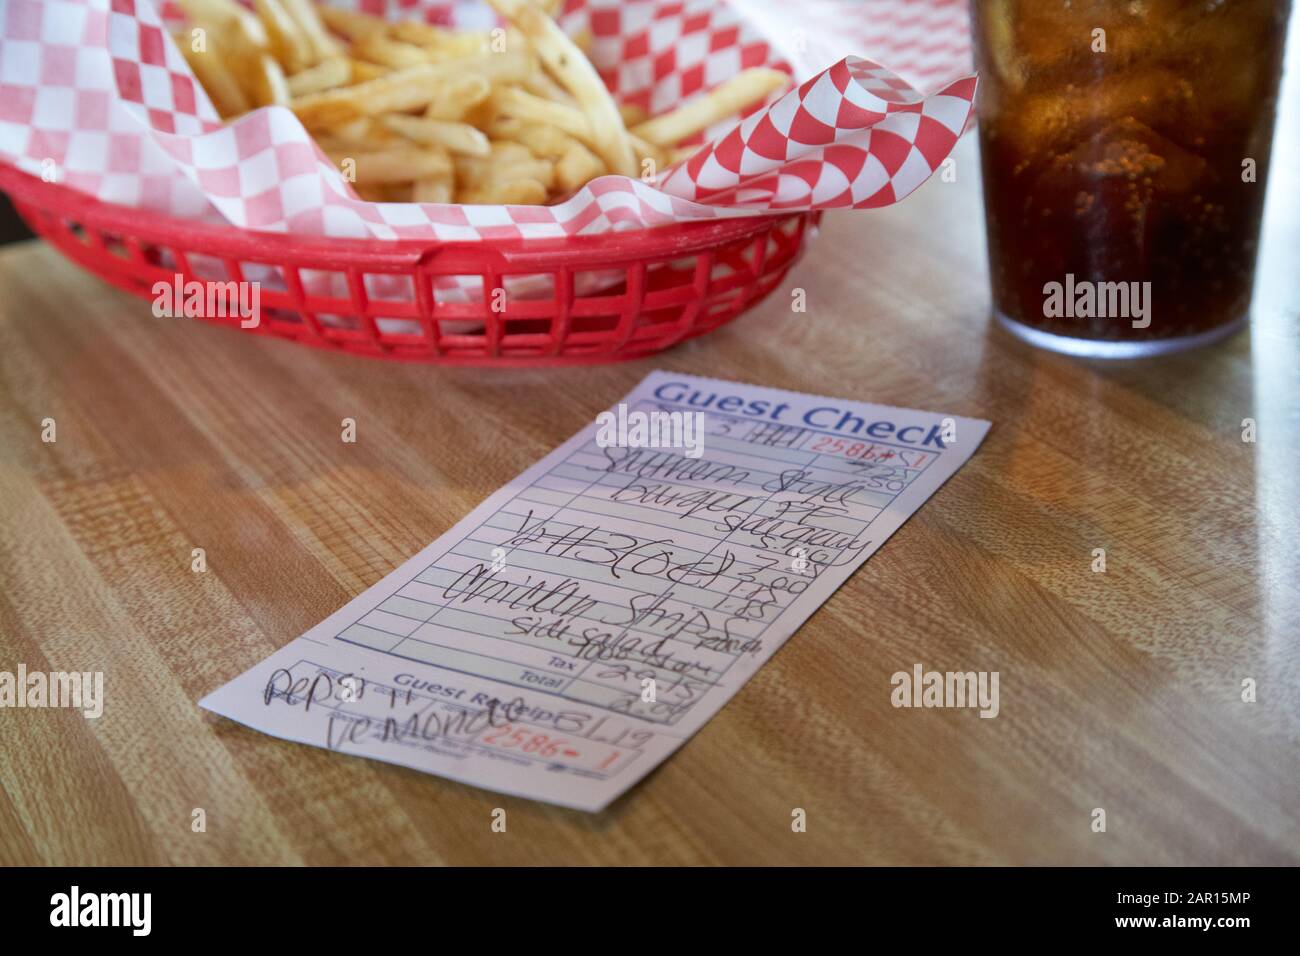 Korb mit Pommes-Cola-Getränk und Check in Rechnung für eine Mahlzeit in einem amerikanischen restaurant Stockfoto